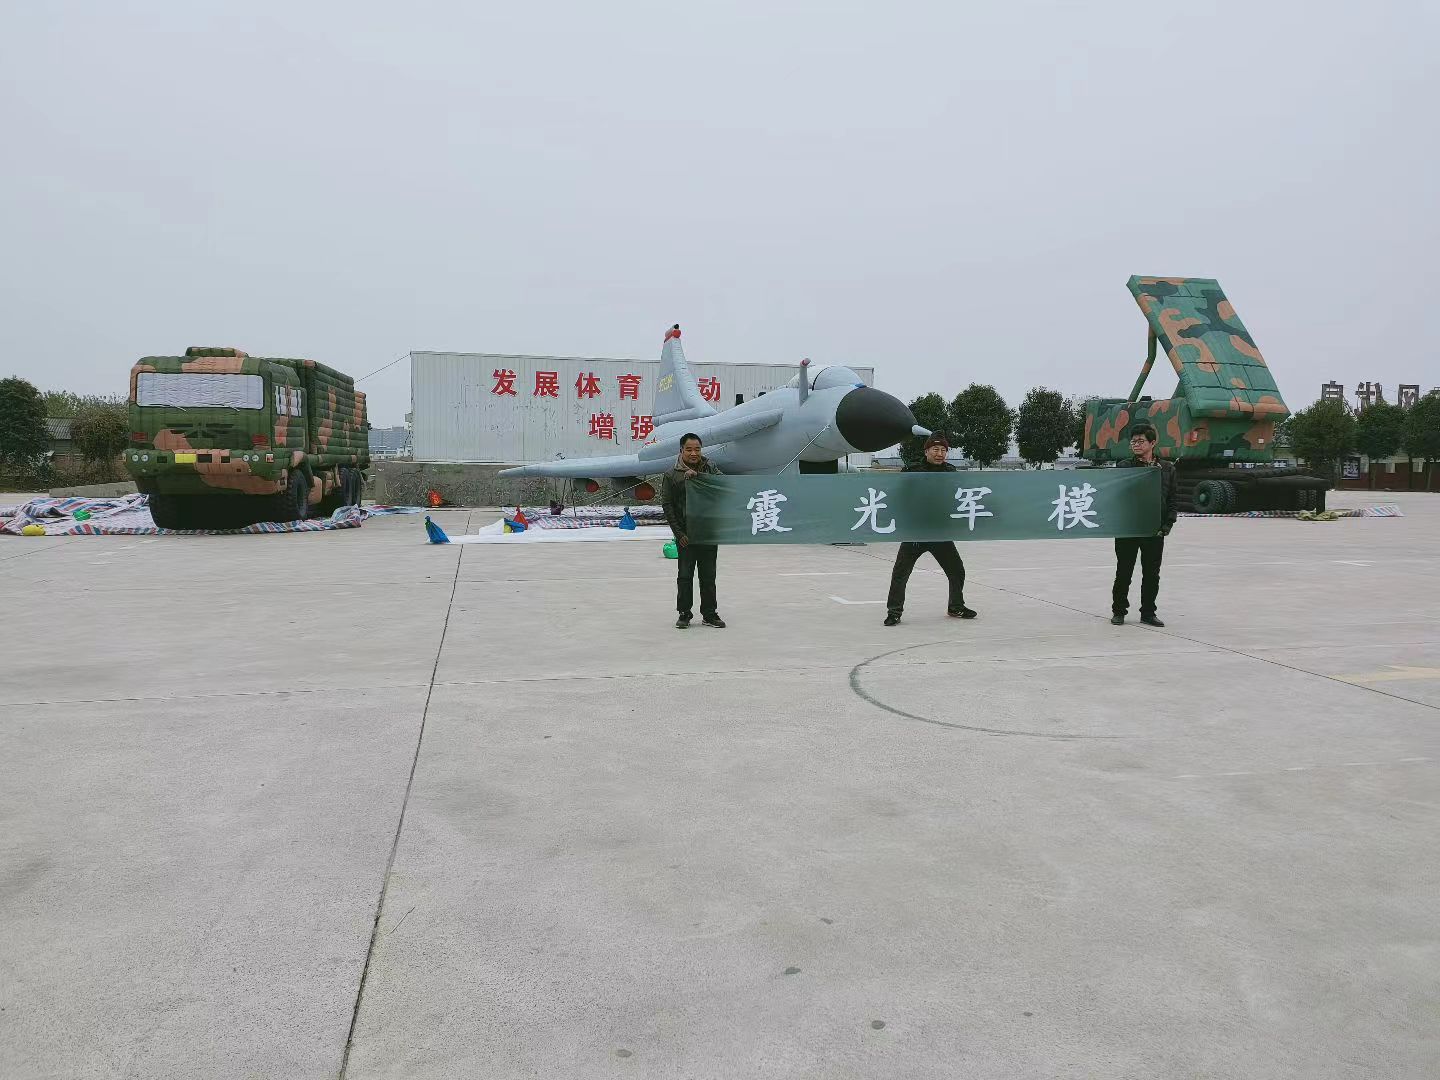 麻江专家称引发关注的无人飞艇或为探空气球:主要用于气象观测